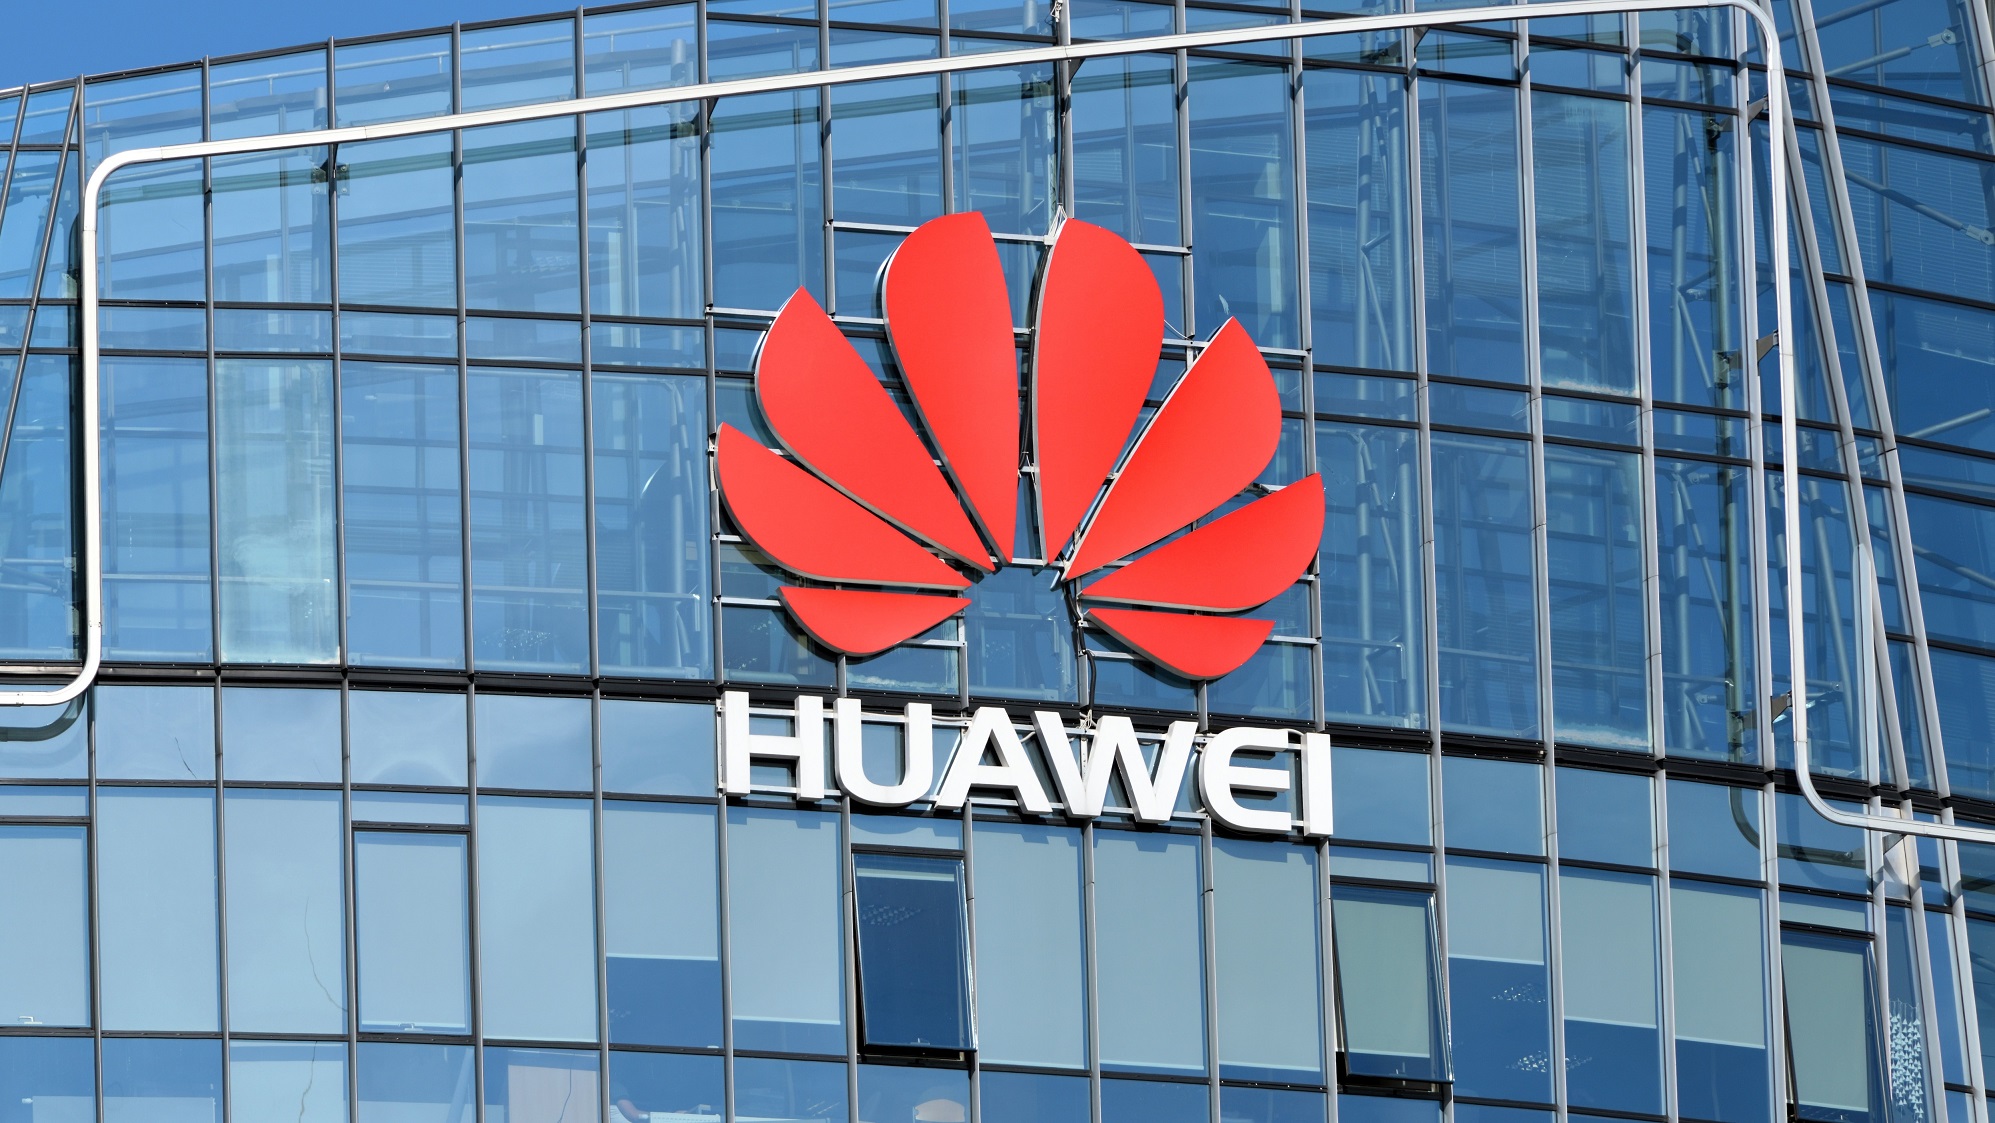 Imponujący akt wprowadzenia w błąd: oficjalne oświadczenie Huawei w odpowiedzi na oskarżenie Bloomberga o udział w cyberataku w Australii